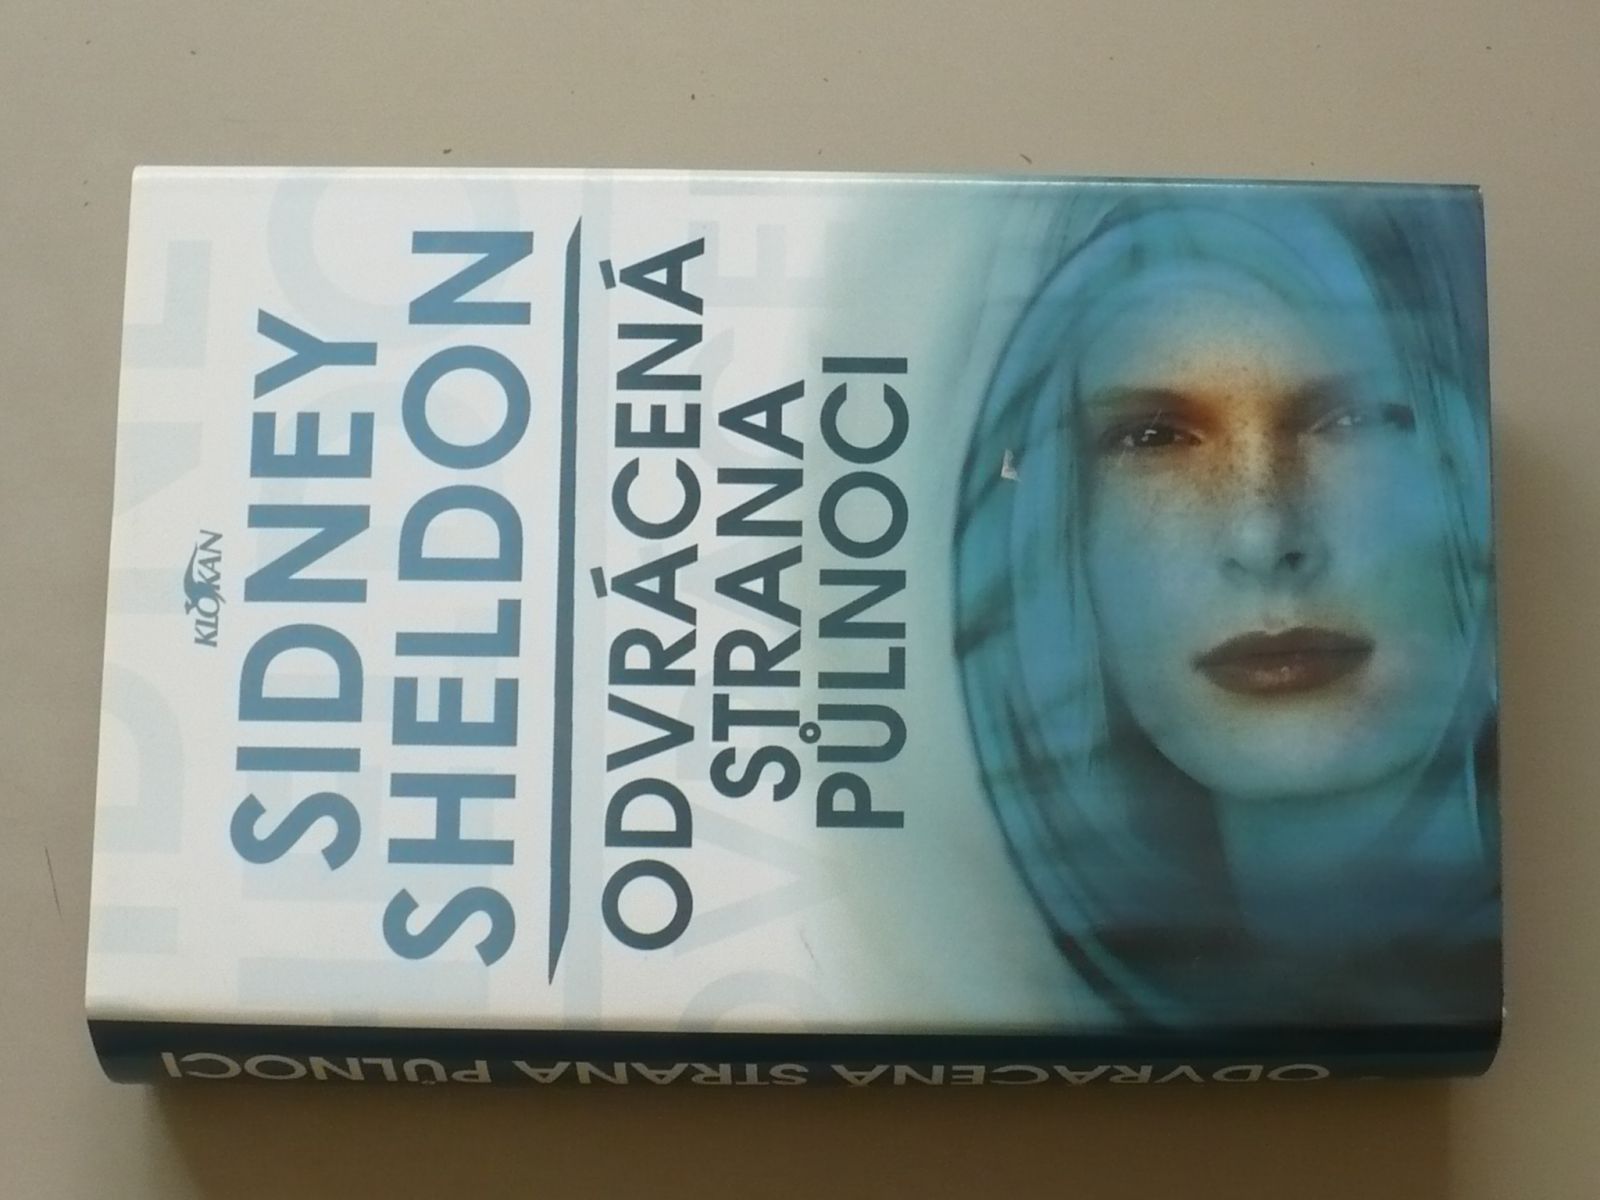 Sidney Sheldon - Odvrácená strana půlnoci (2002)